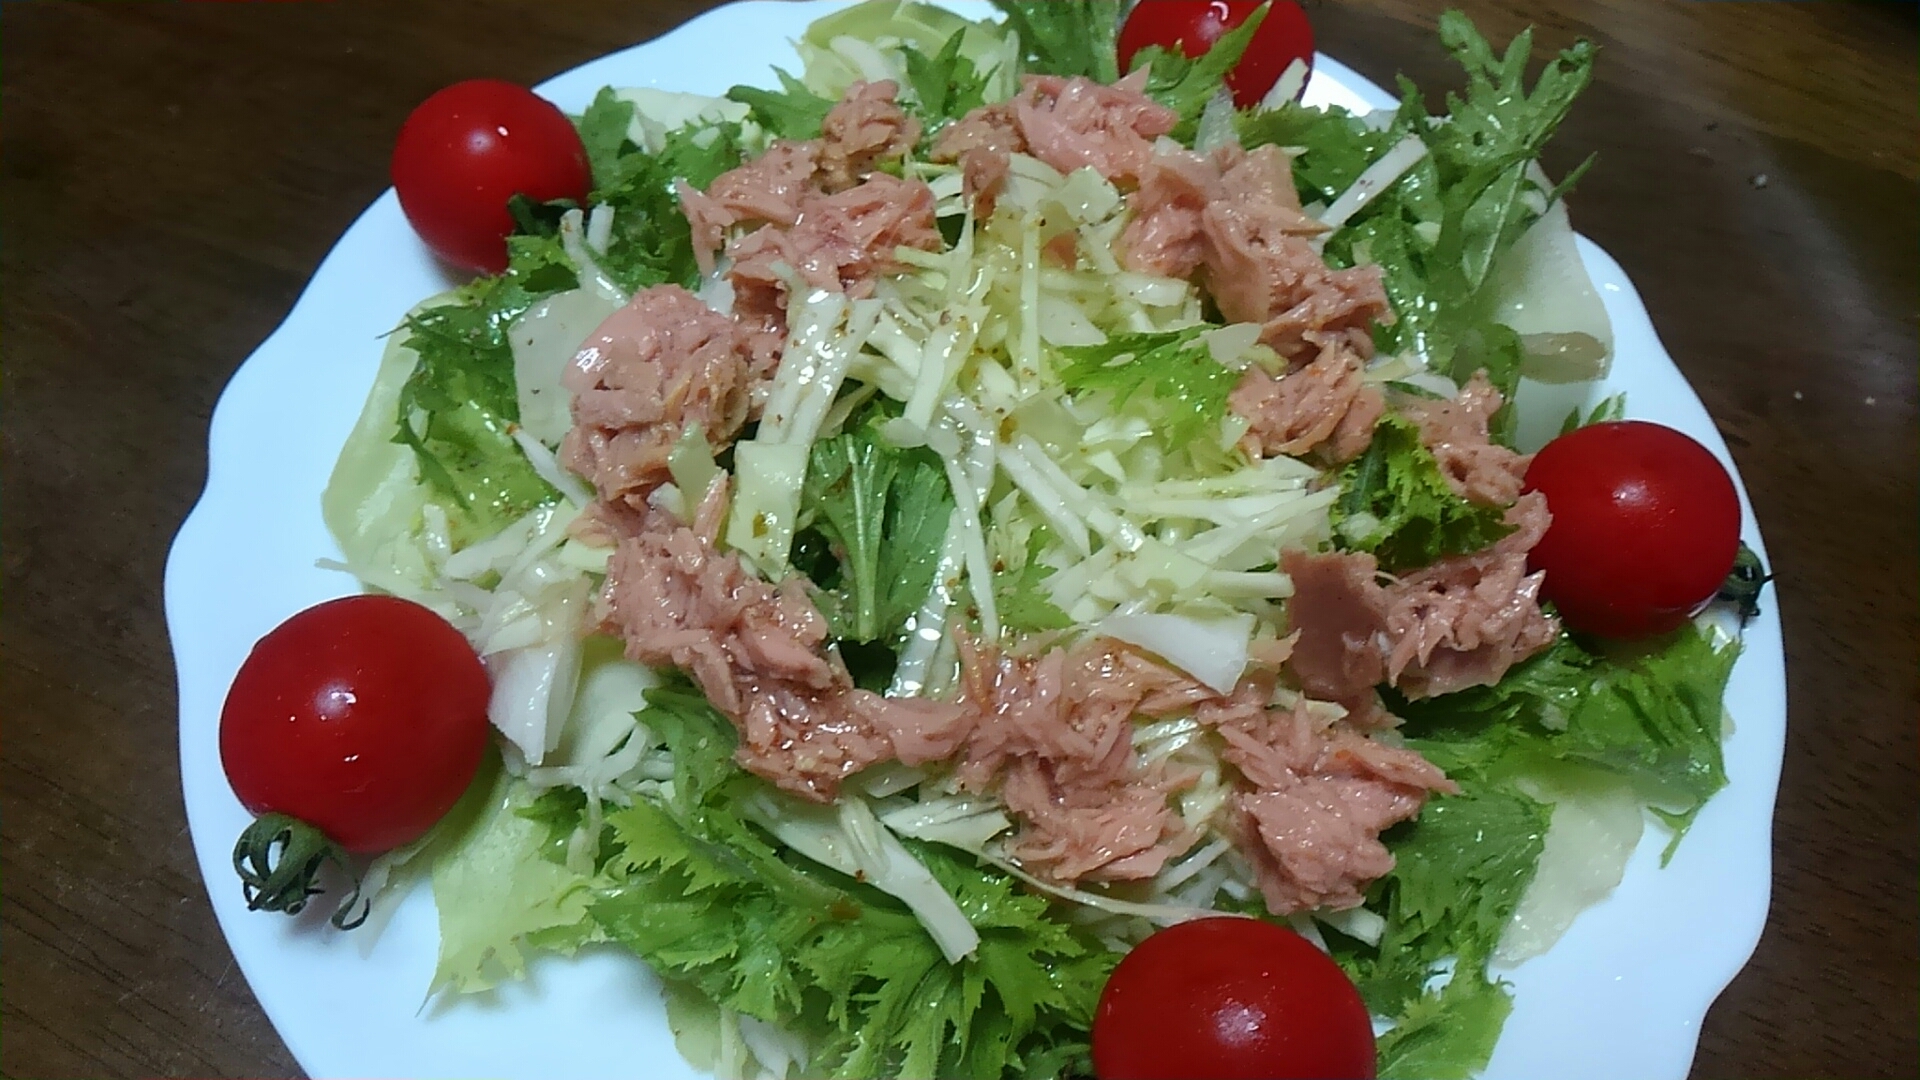 ツナ・わさび菜・レタス・キャベツ・トマトのサラダ